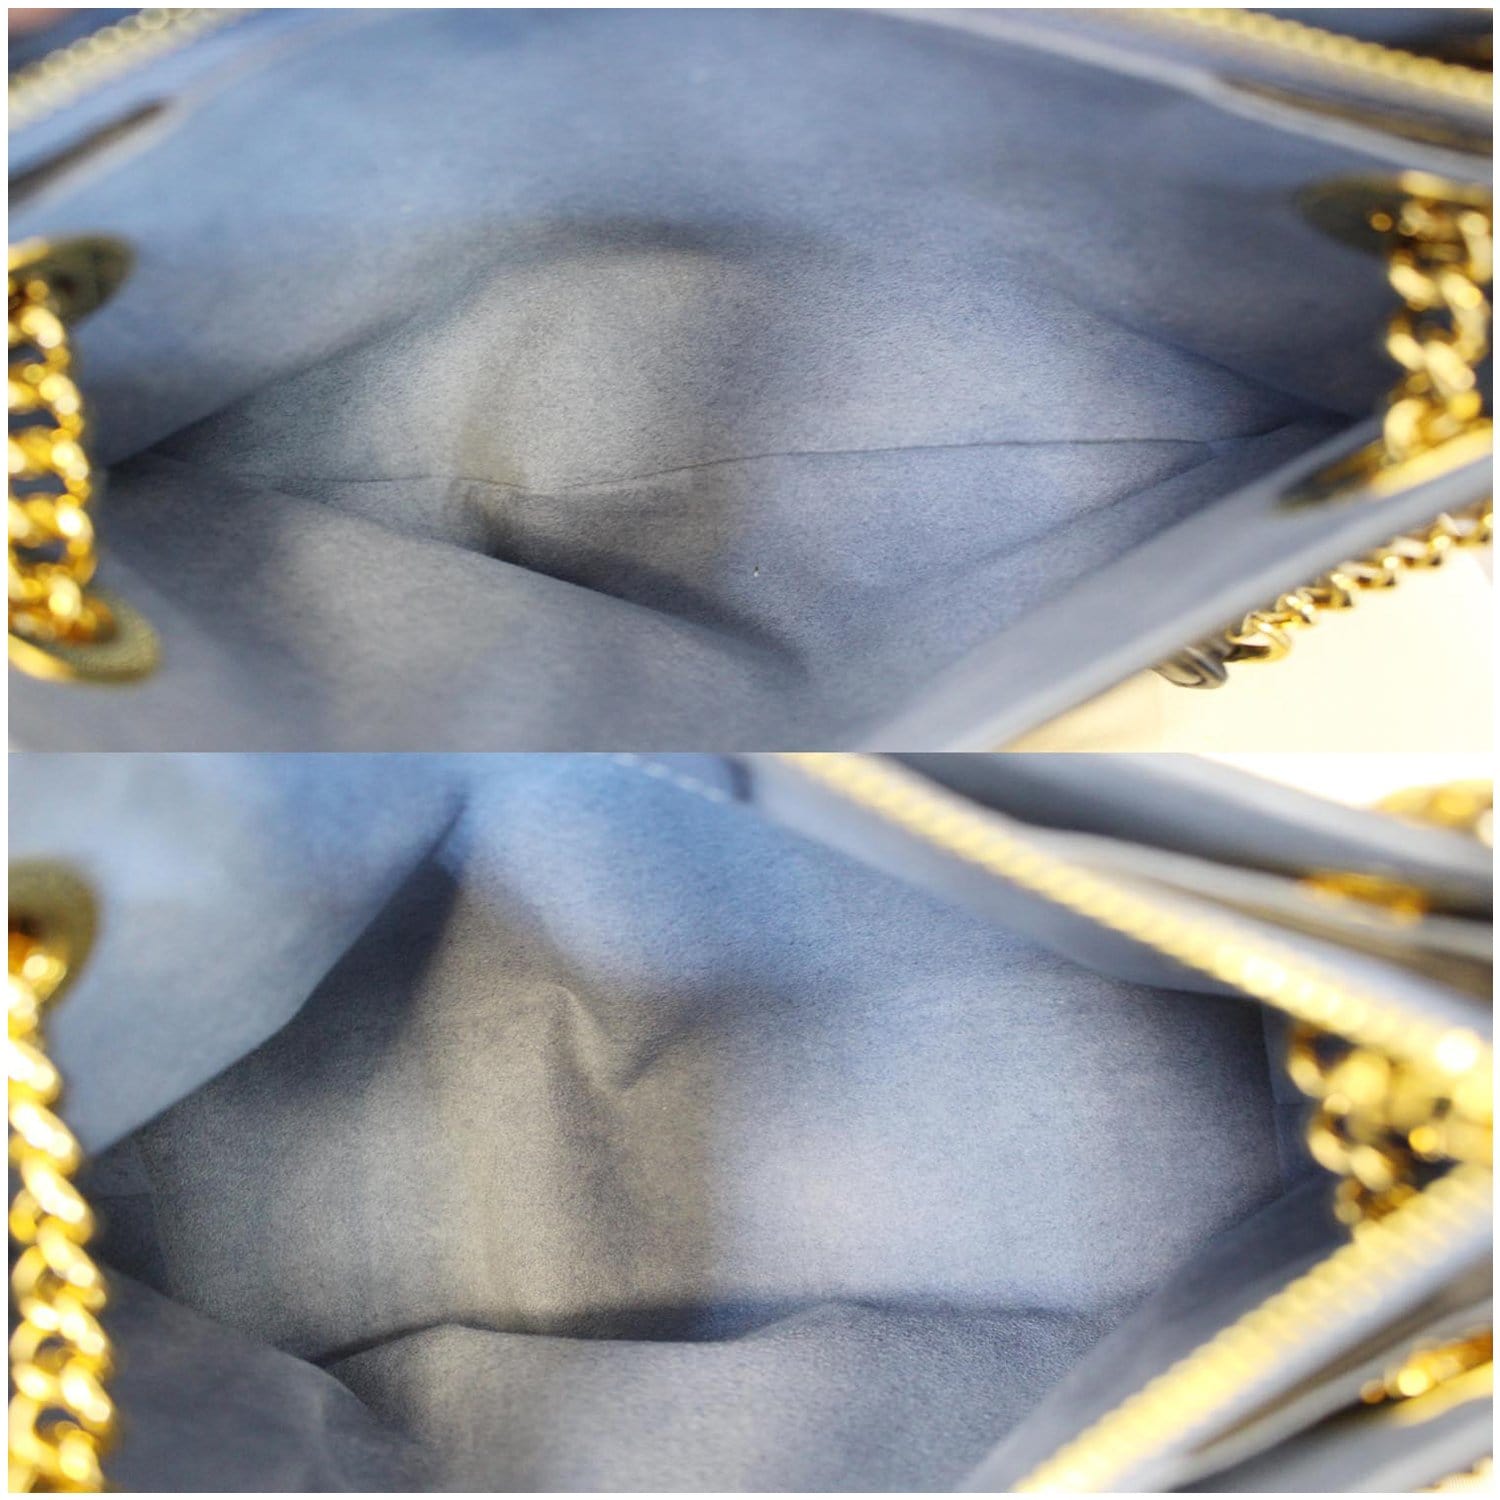 M43775 Surene Bb Shoulder bag in Canvas, Gold Hardware